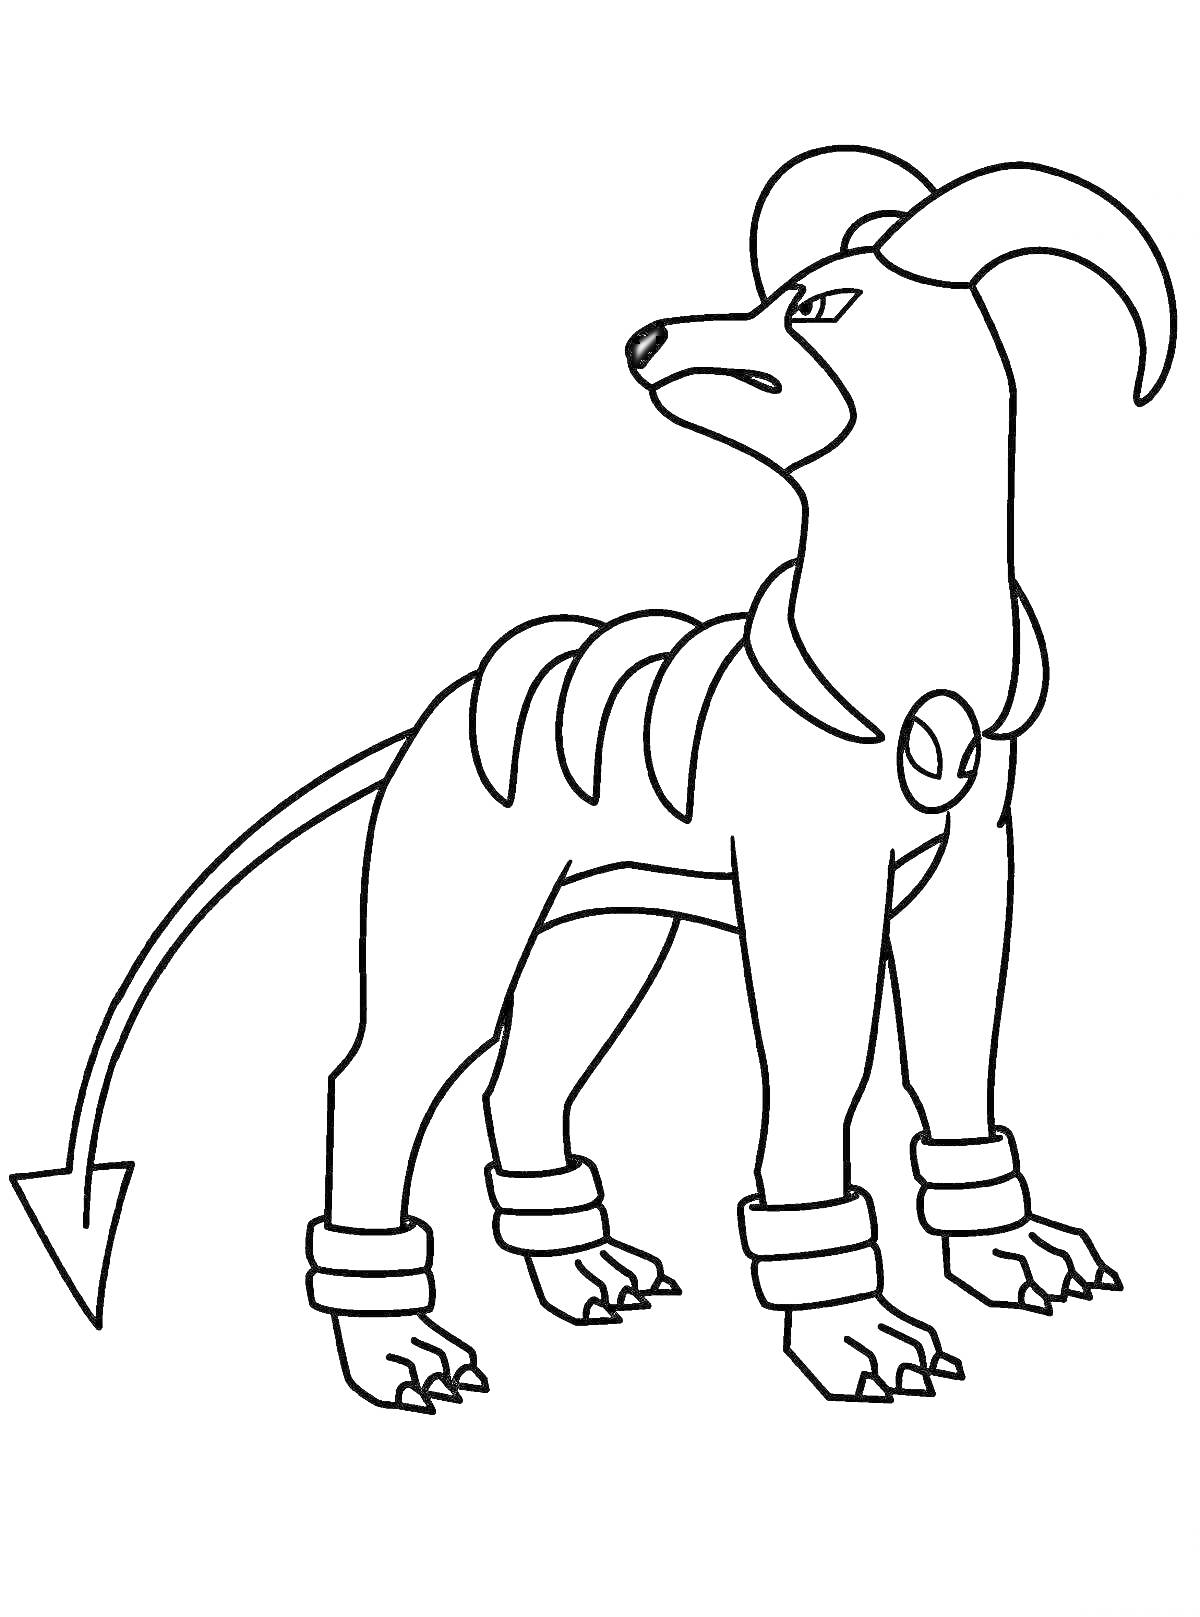 Раскраска Собака с рогами, ошейником, кольцами на лапах и хвостом со стрелкой